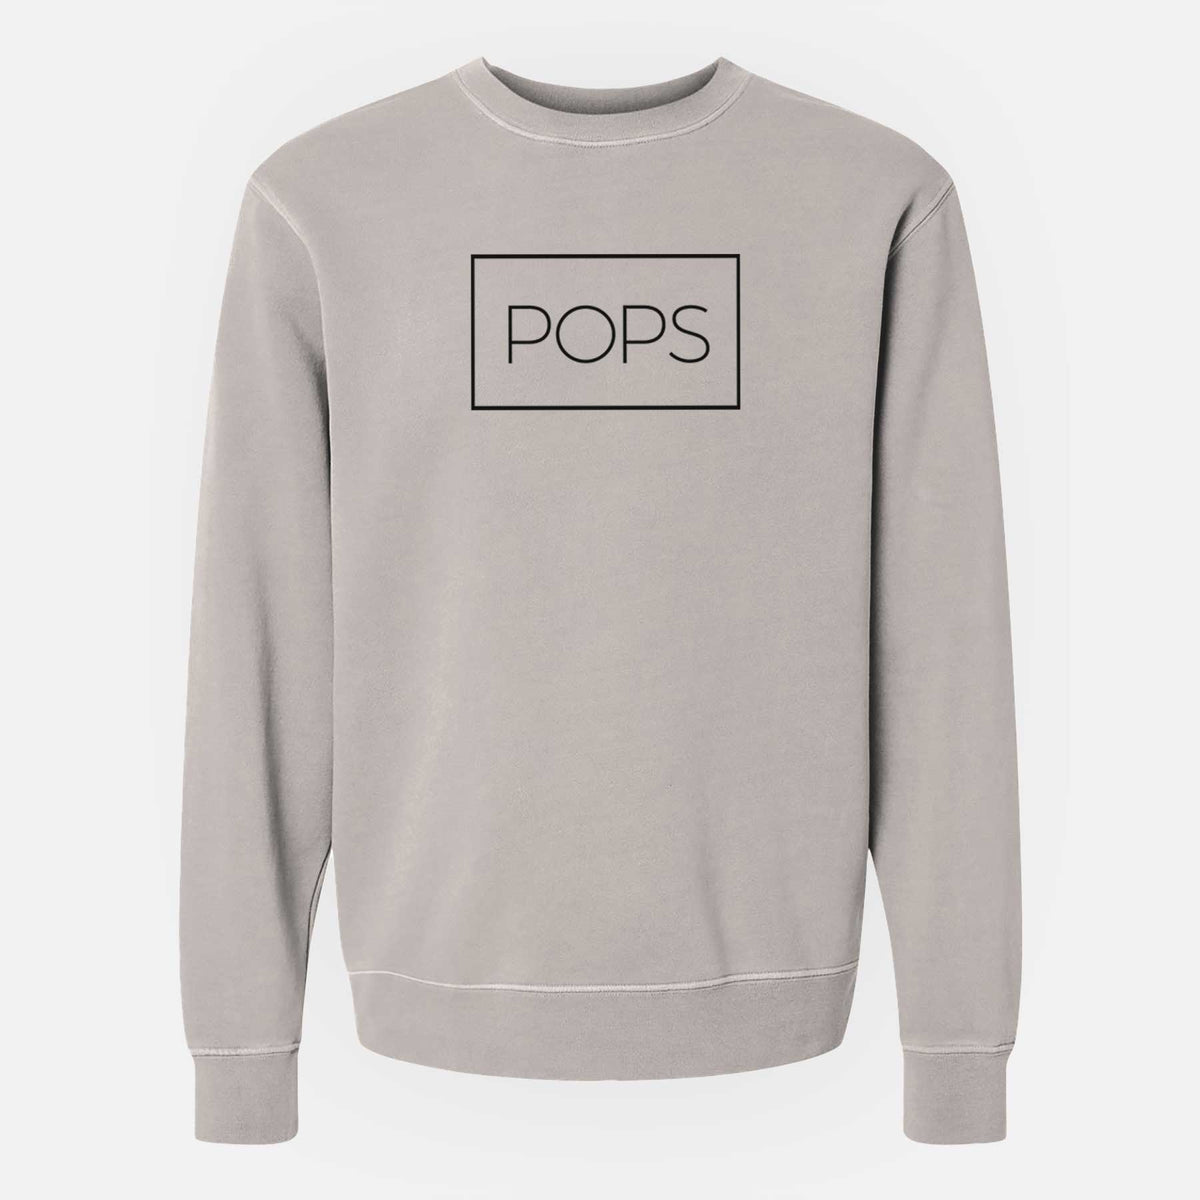 Pops Boxed 1 line - Unisex Pigment Dyed Crew Sweatshirt